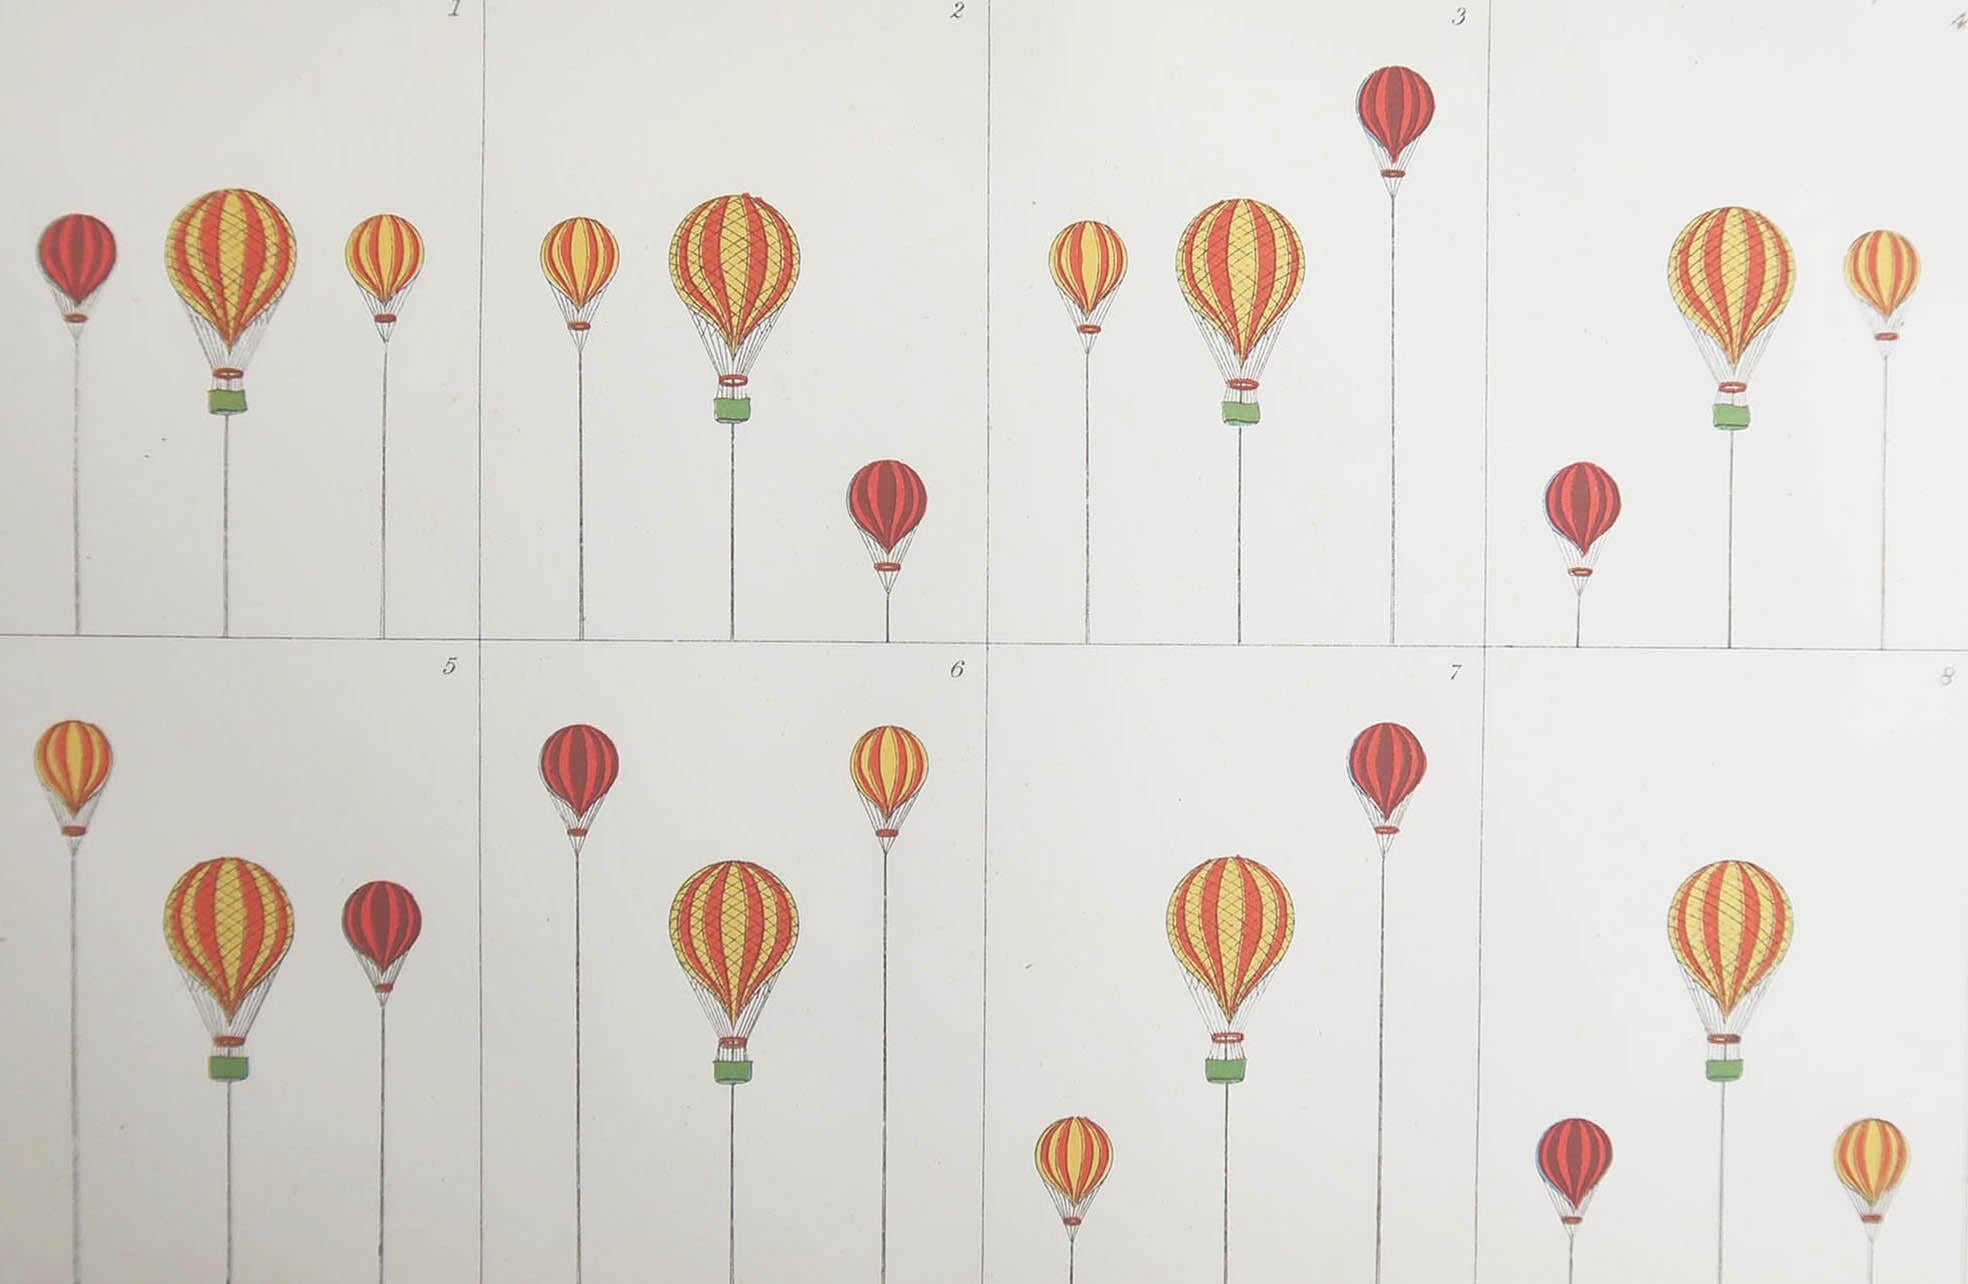 Merveilleuse impression de montgolfières

Chromo-lithographie

Publié par W.Mackenzie. C.1880

Couleur originale

Non encadré.

Livraison gratuite.








